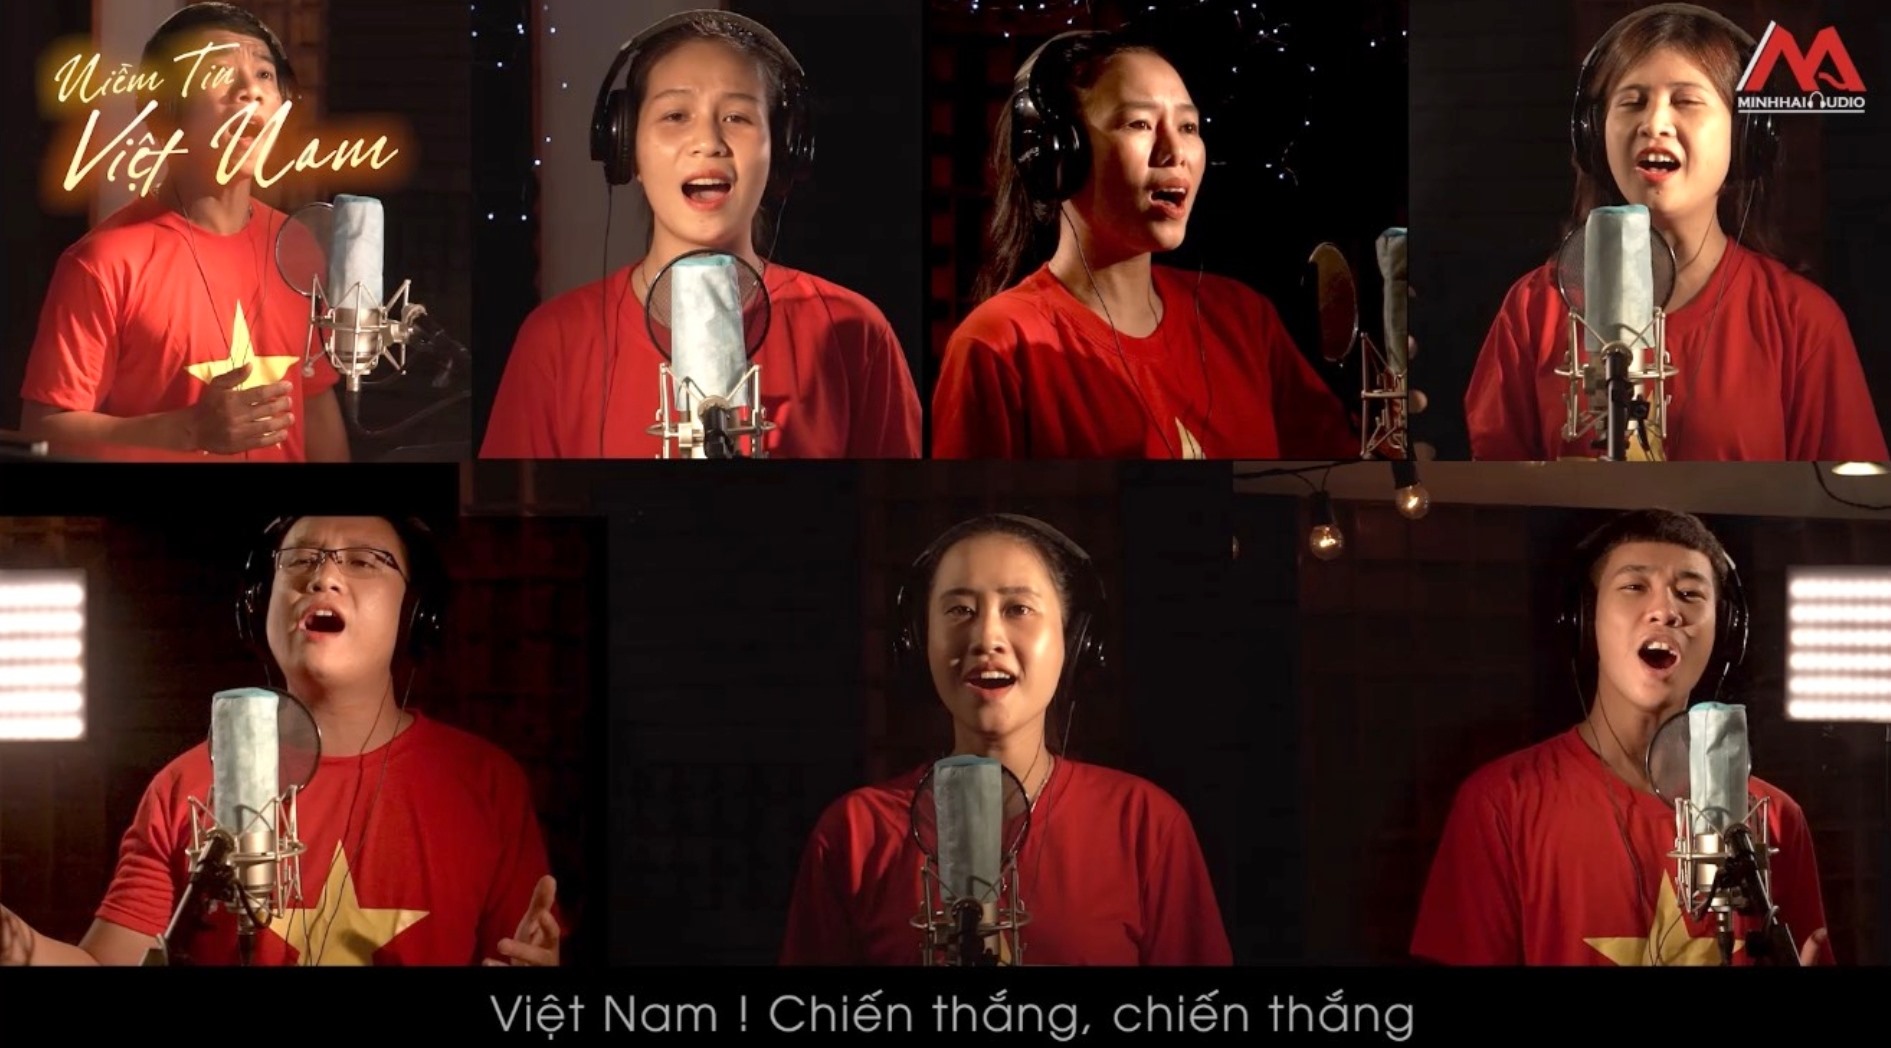 Ảnh bìa của  MV ca nhạc truyền thông “Niềm tin Việt Nam” - Ảnh: K.K.S